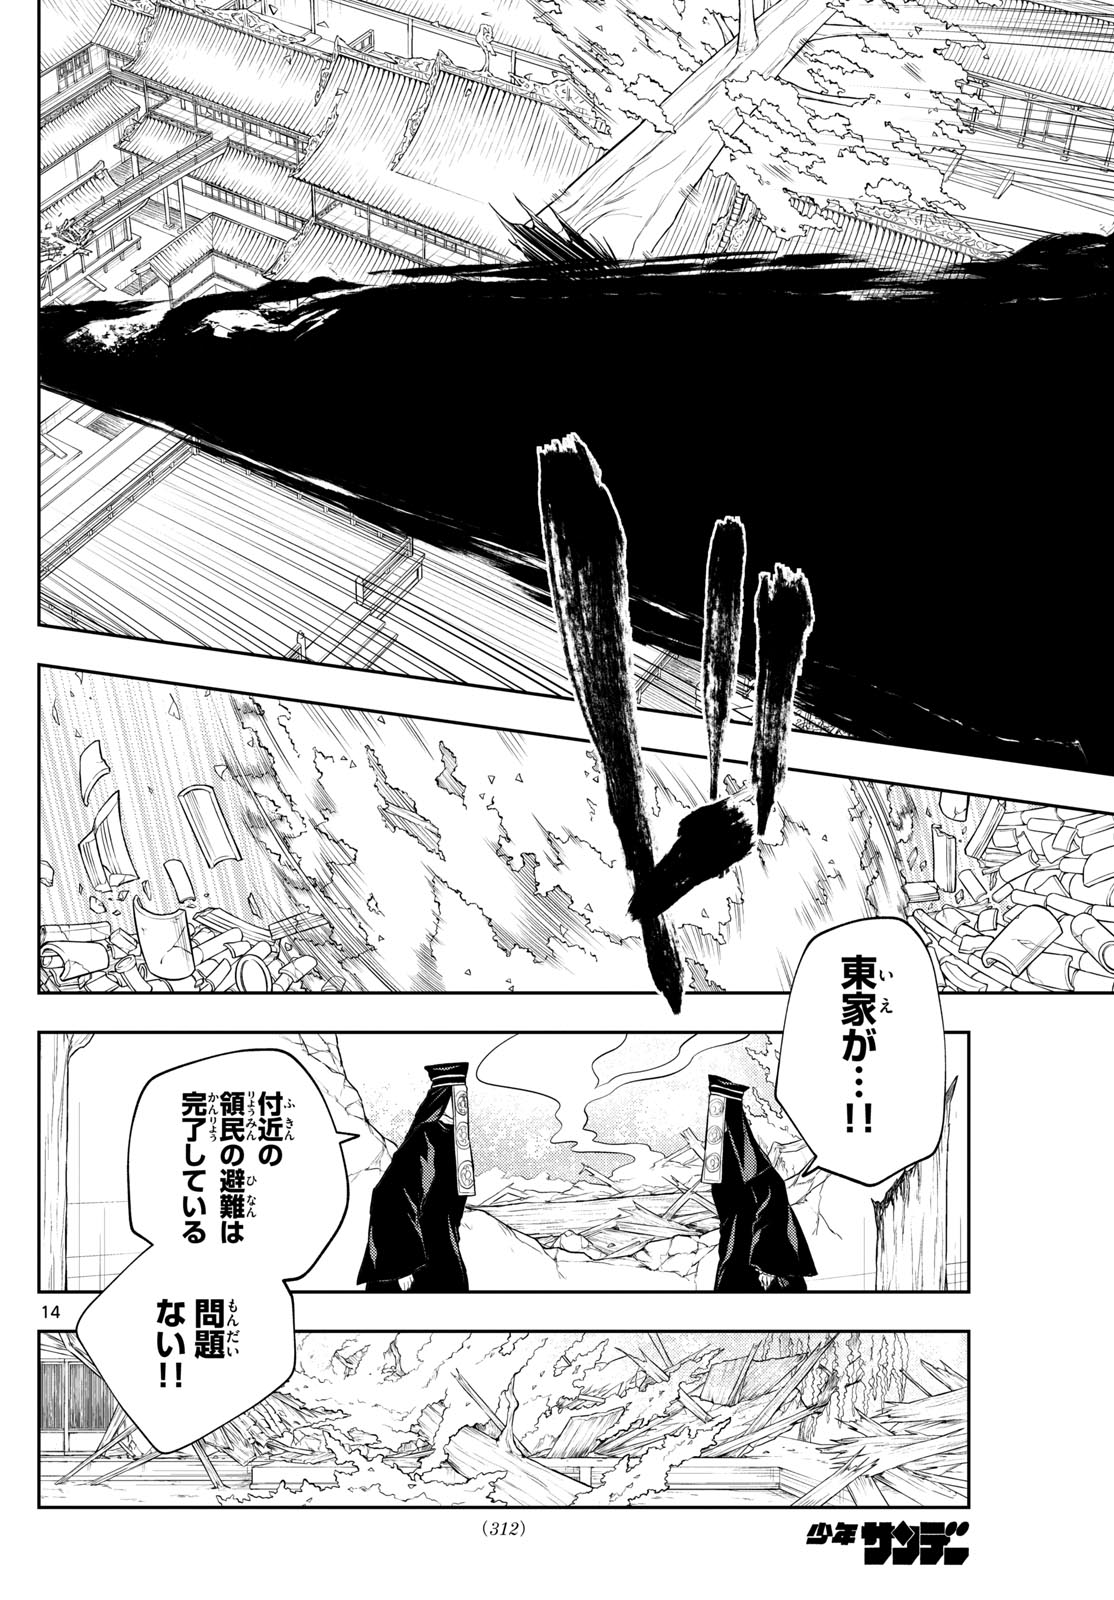 Akatsuki Jihen - Chapter 43 - Page 14